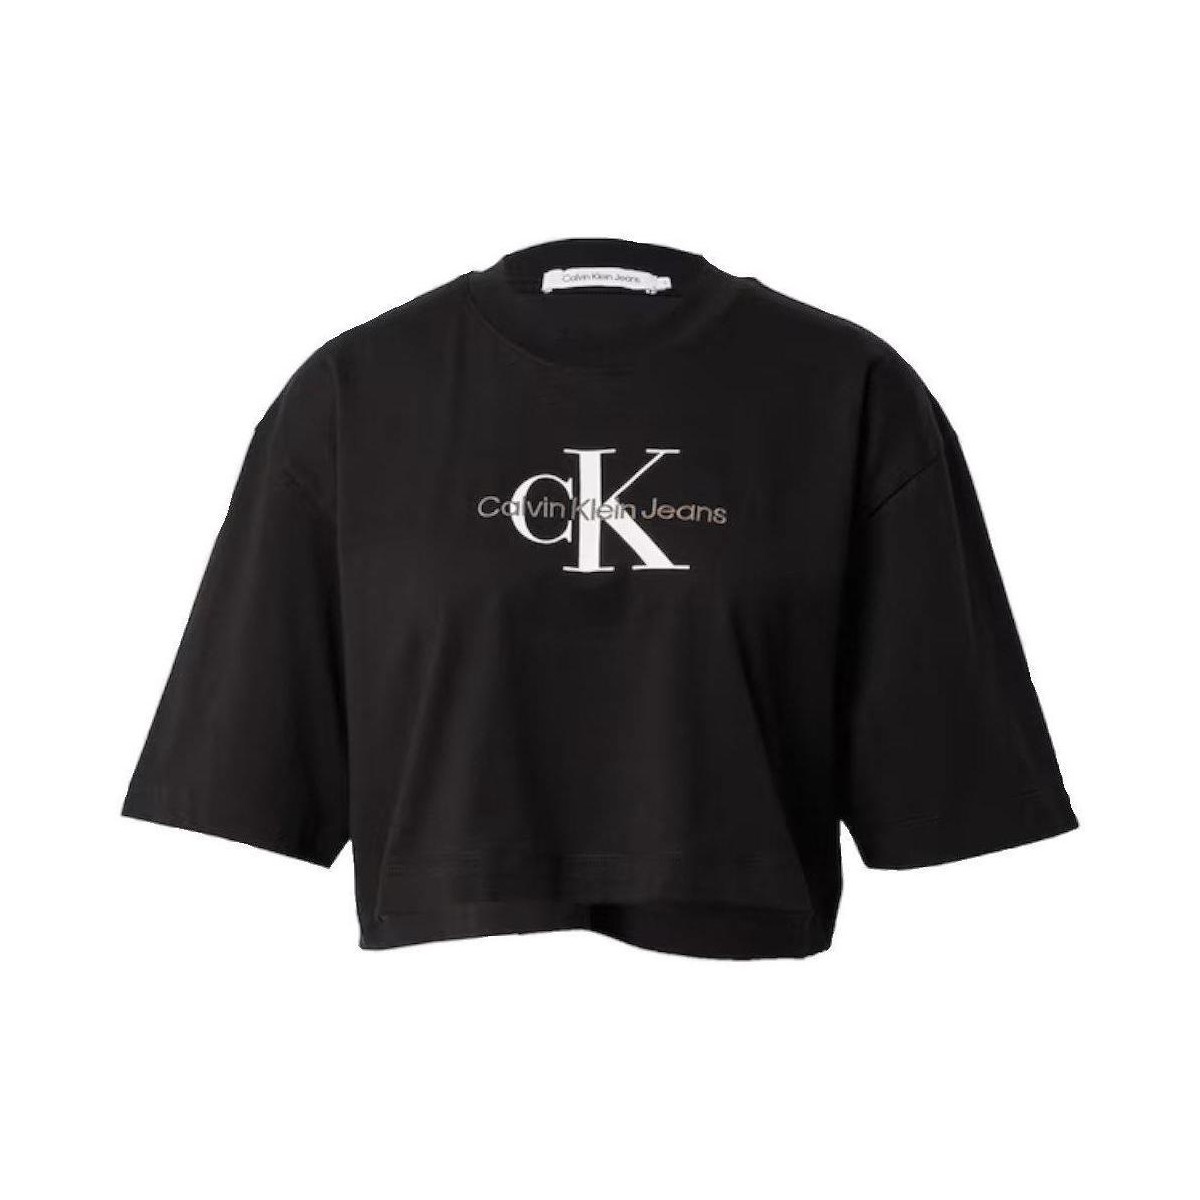 tekstylia Damskie T-shirty z krótkim rękawem Calvin Klein Jeans  Czarny